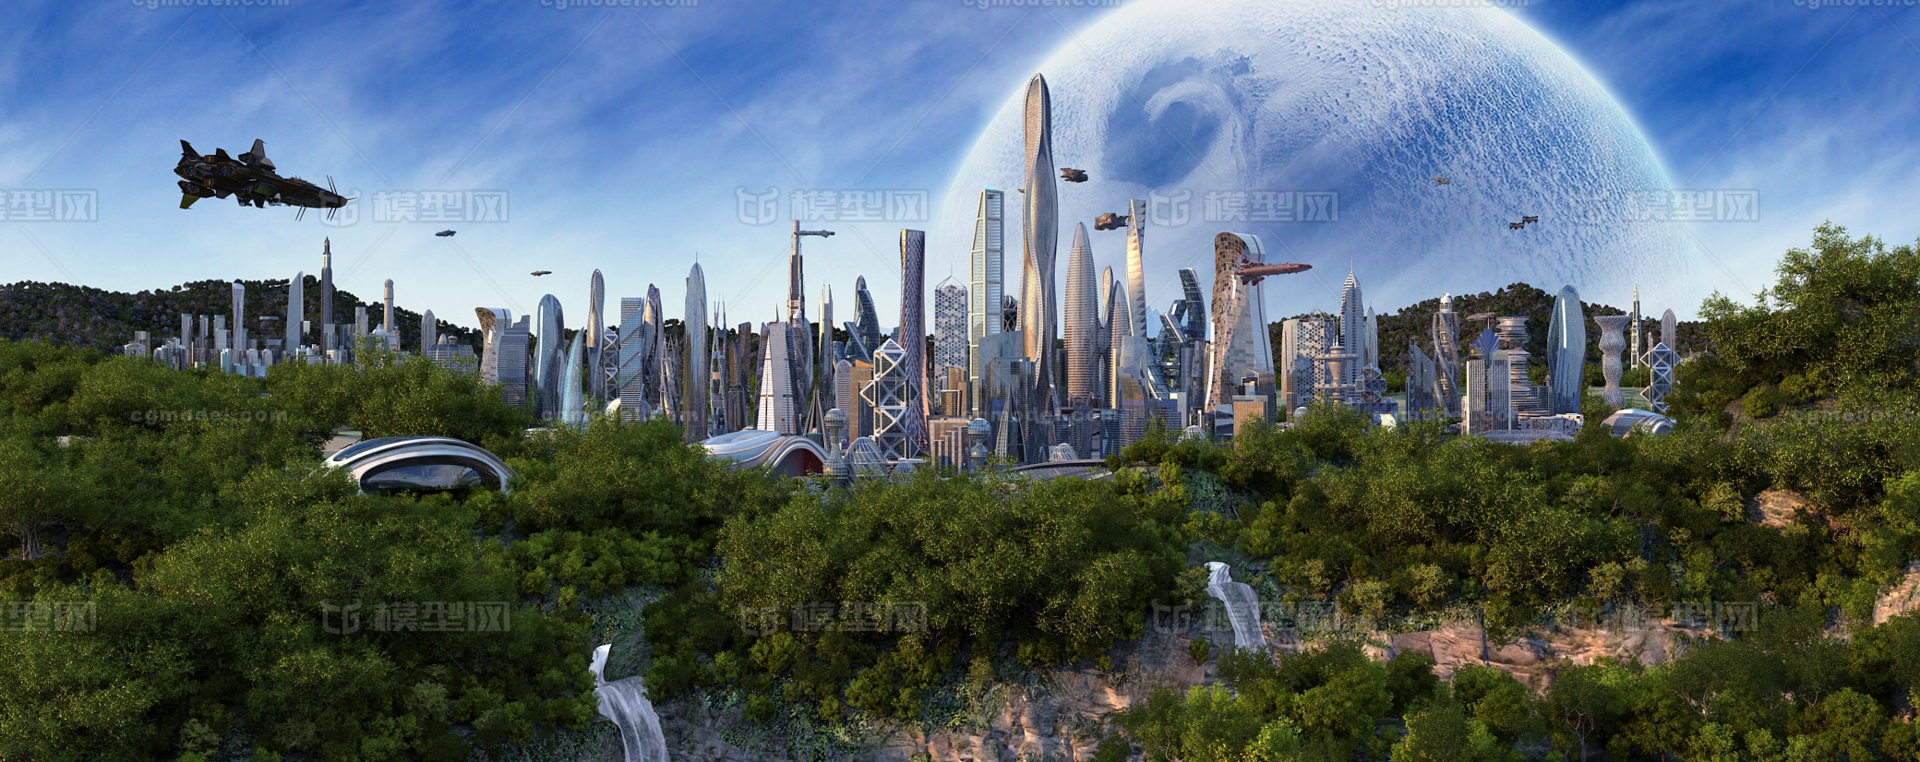 未来城市 未来世界 科幻城市 未来建筑_liboss作品_场景科幻场景_cg模